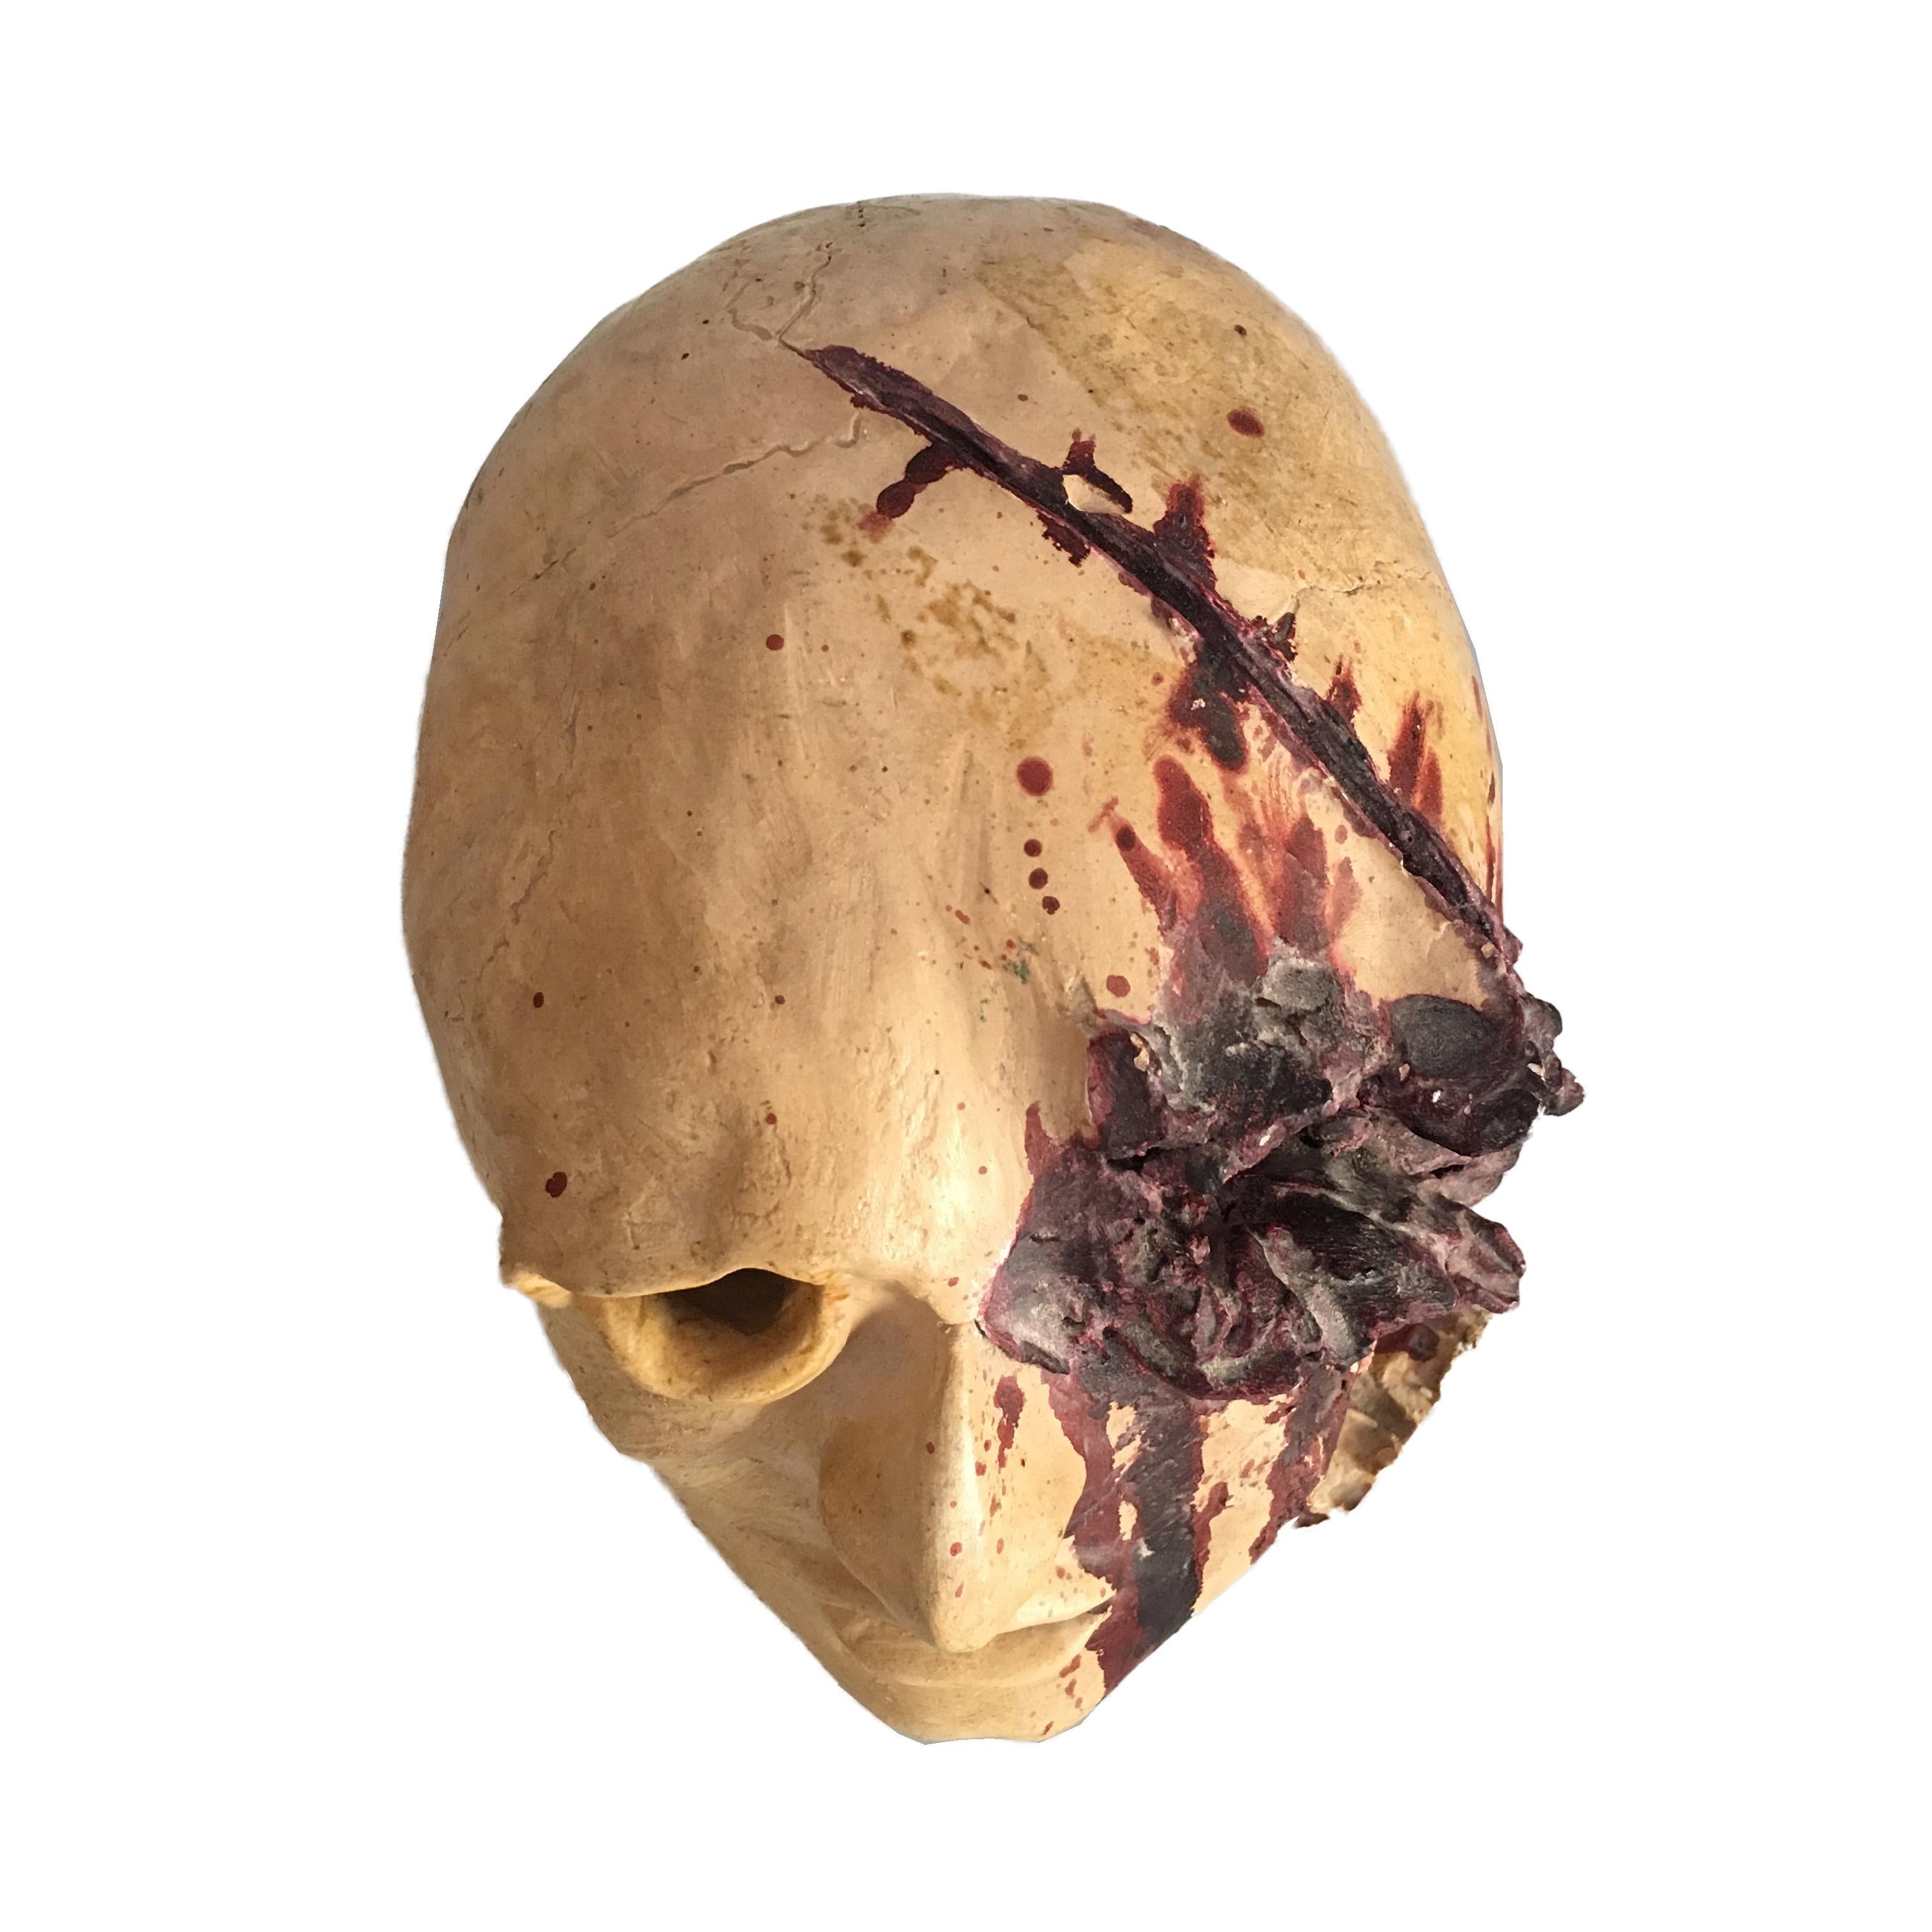 Diese Skulptur ist aus Keramik und stellt einen menschlichen Kopf dar, der durch einen Axthieb zerrissen wurde, was die Wunde bluten lässt. Das Blut fließt in die rechte Gesichtshälfte und erreicht das Auge.